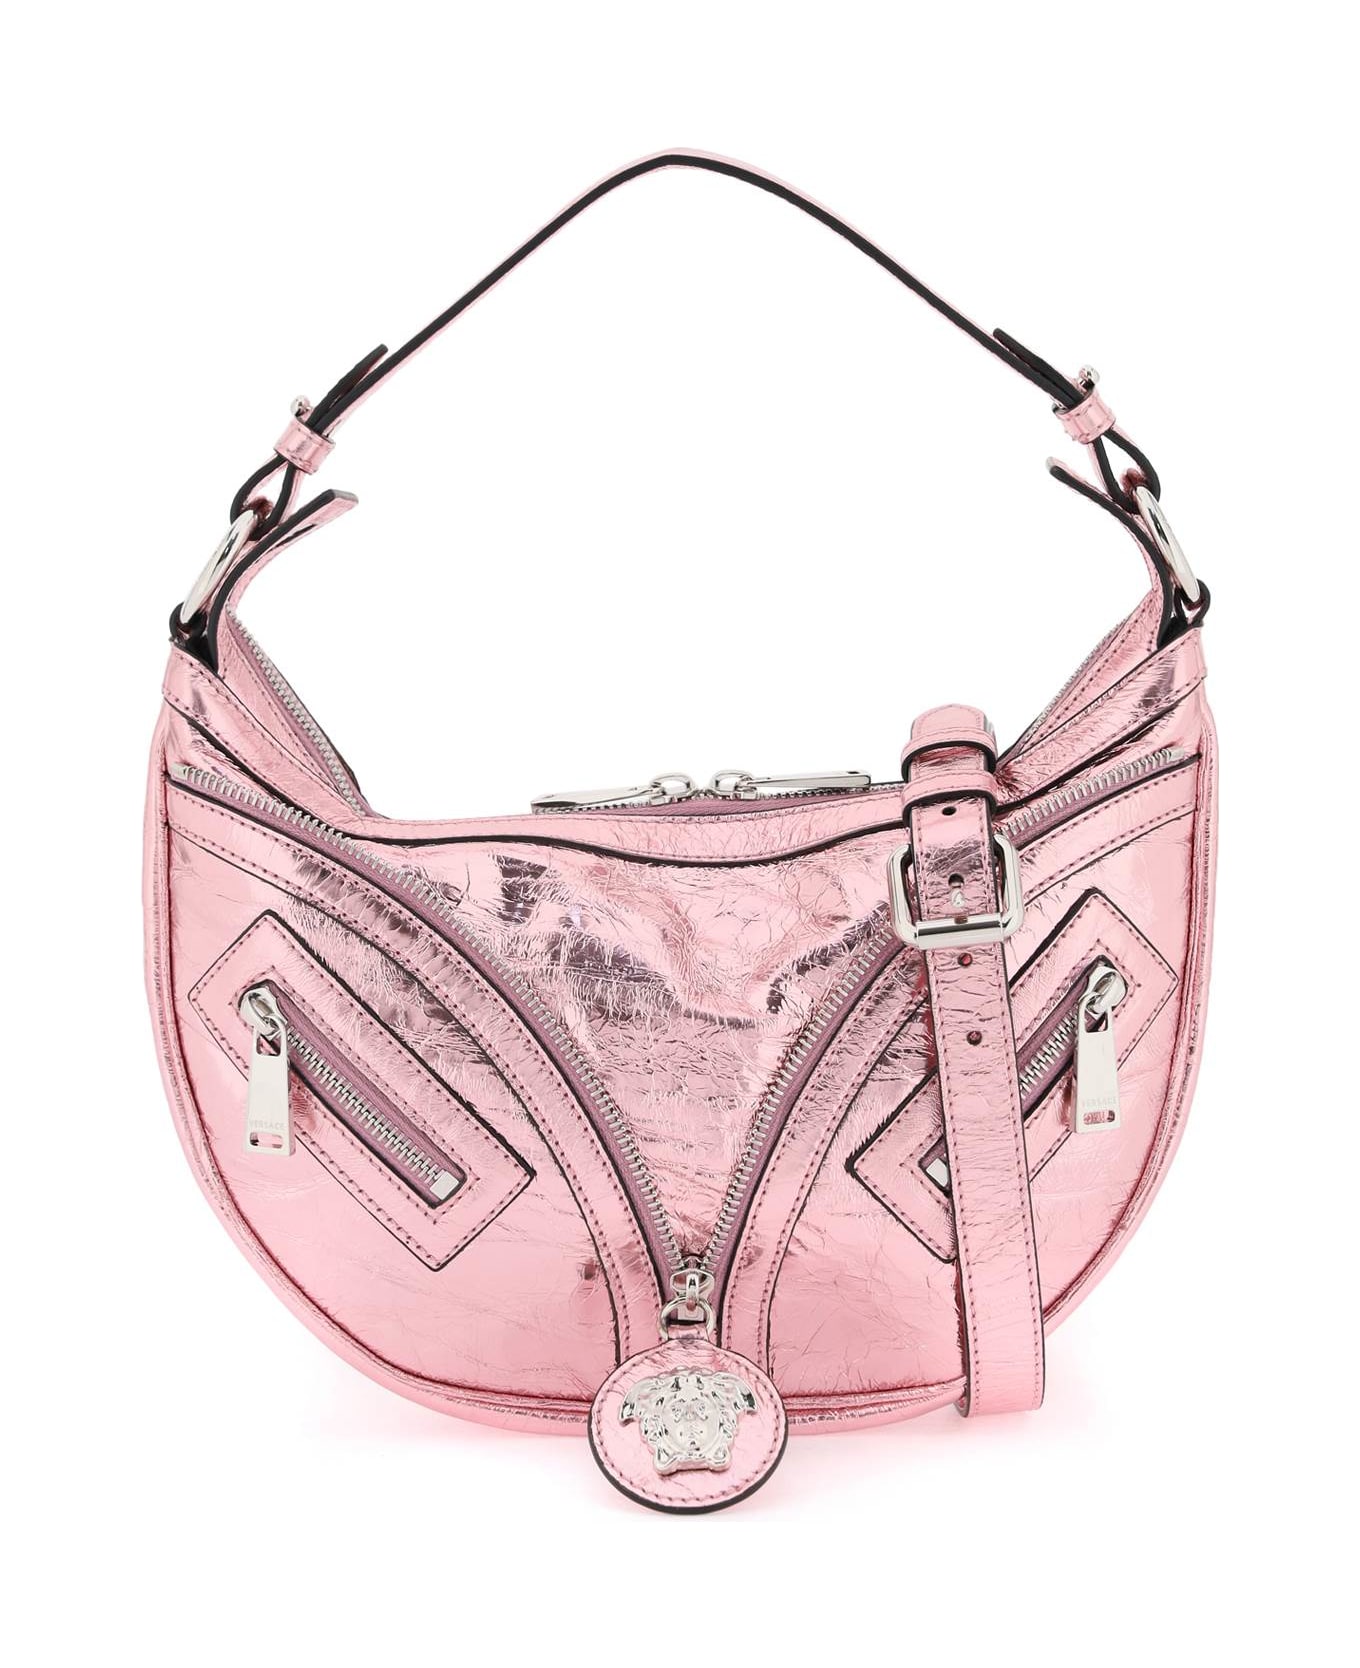 Versace Repeat Small Hobo Bag - P Baby Pink New Palladium